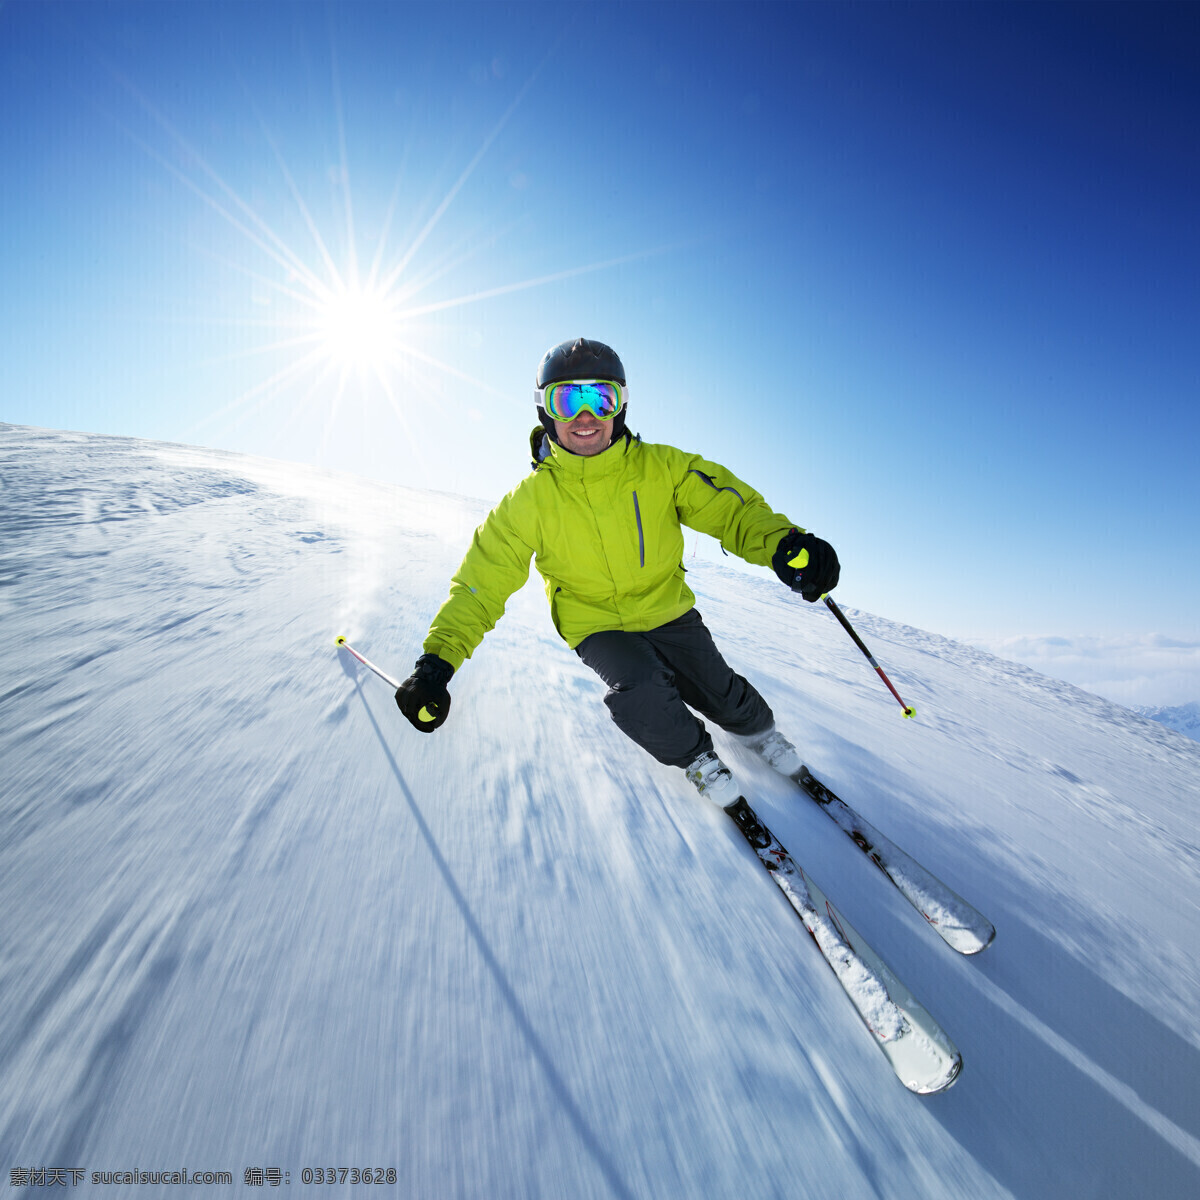 滑雪 冰 冰雪运动 高山滑雪 滑雪运动 雪 蓝天 白云 滑雪场 运动 健身 保健 雪地 白雪 体育 人物 冬天 高清 风景 人物摄影 冬季 寒冬 大雪 雪山 冰雪 冬季运动 极限运动 滑雪运动员 体育运动 文化艺术